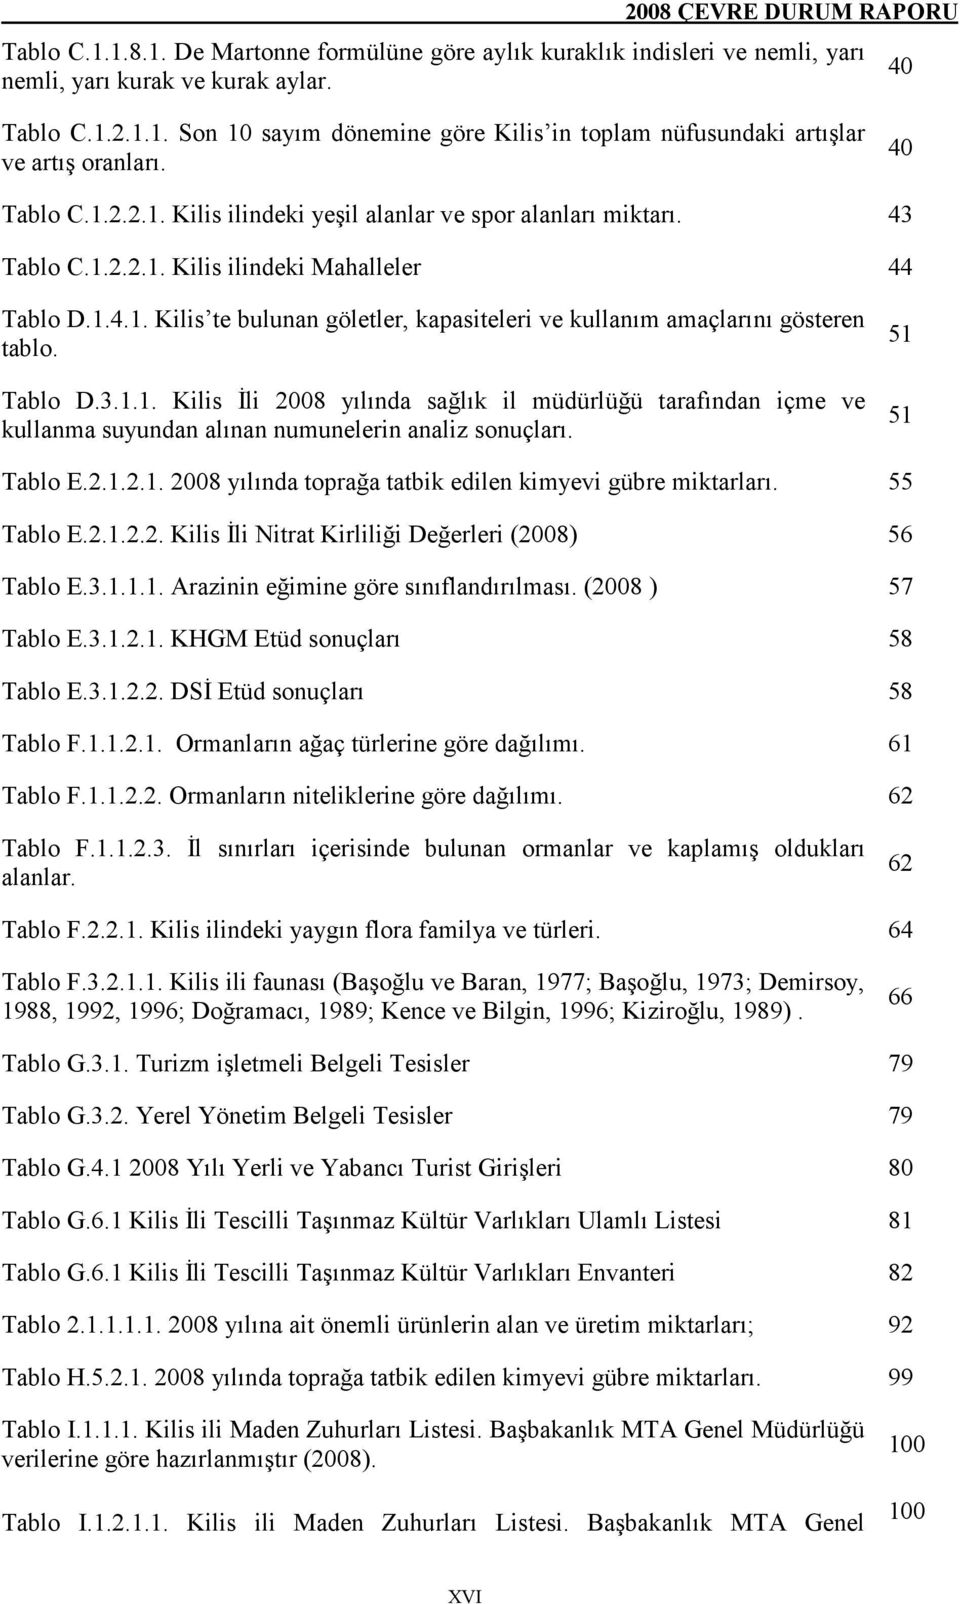 Tablo D.3.1.1. Kilis Đli 2008 yılında sağlık il müdürlüğü tarafından içme ve kullanma suyundan alınan numunelerin analiz sonuçları. 51 51 Tablo E.2.1.2.1. 2008 yılında toprağa tatbik edilen kimyevi gübre miktarları.